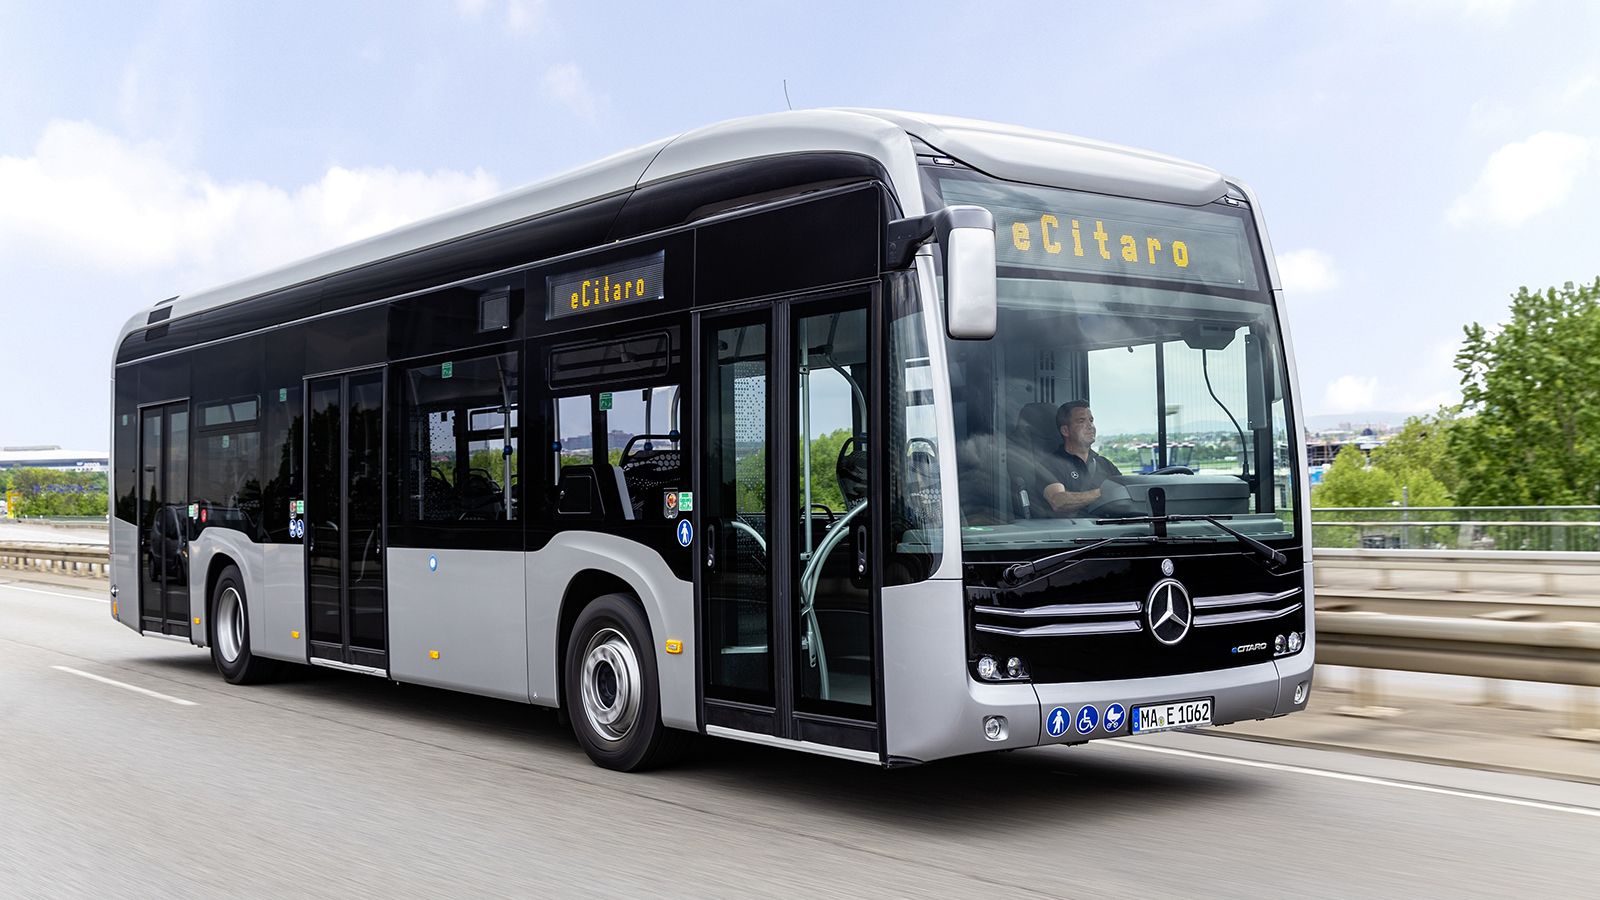 Η παραγωγή του Mercedes-Benz eCitaro έχει ξεκινήσει από το 2018 και συνεχώς πληθαίνουν οι πόλεις που βγάζουν το ηλεκτρικό λεωφορείο στους δρόμους τους.